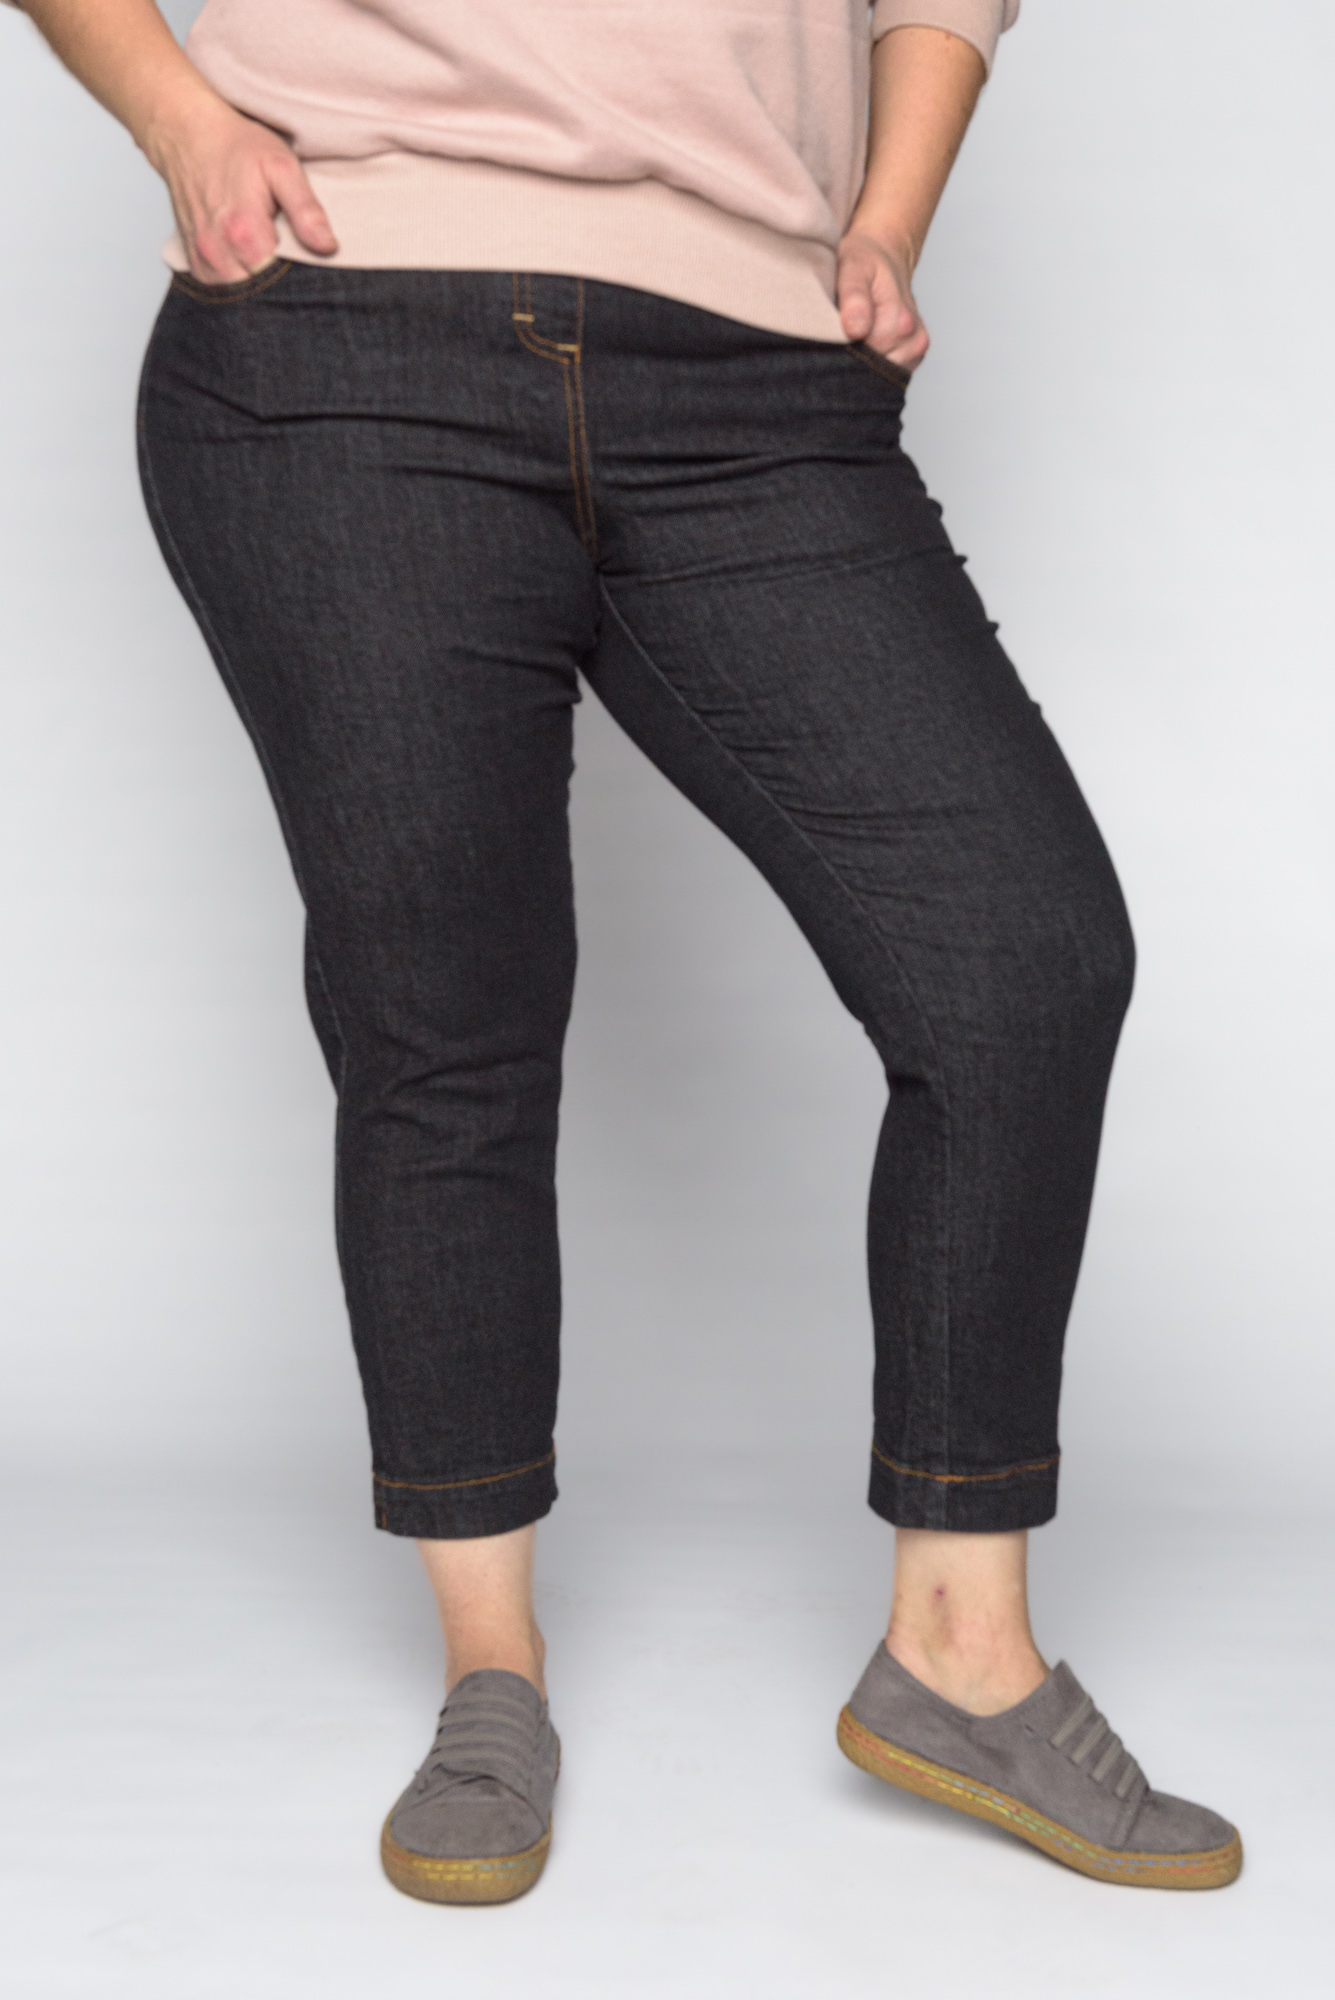 Klasyczne jeansy CEVLAR długość 7/8 kolor czarny